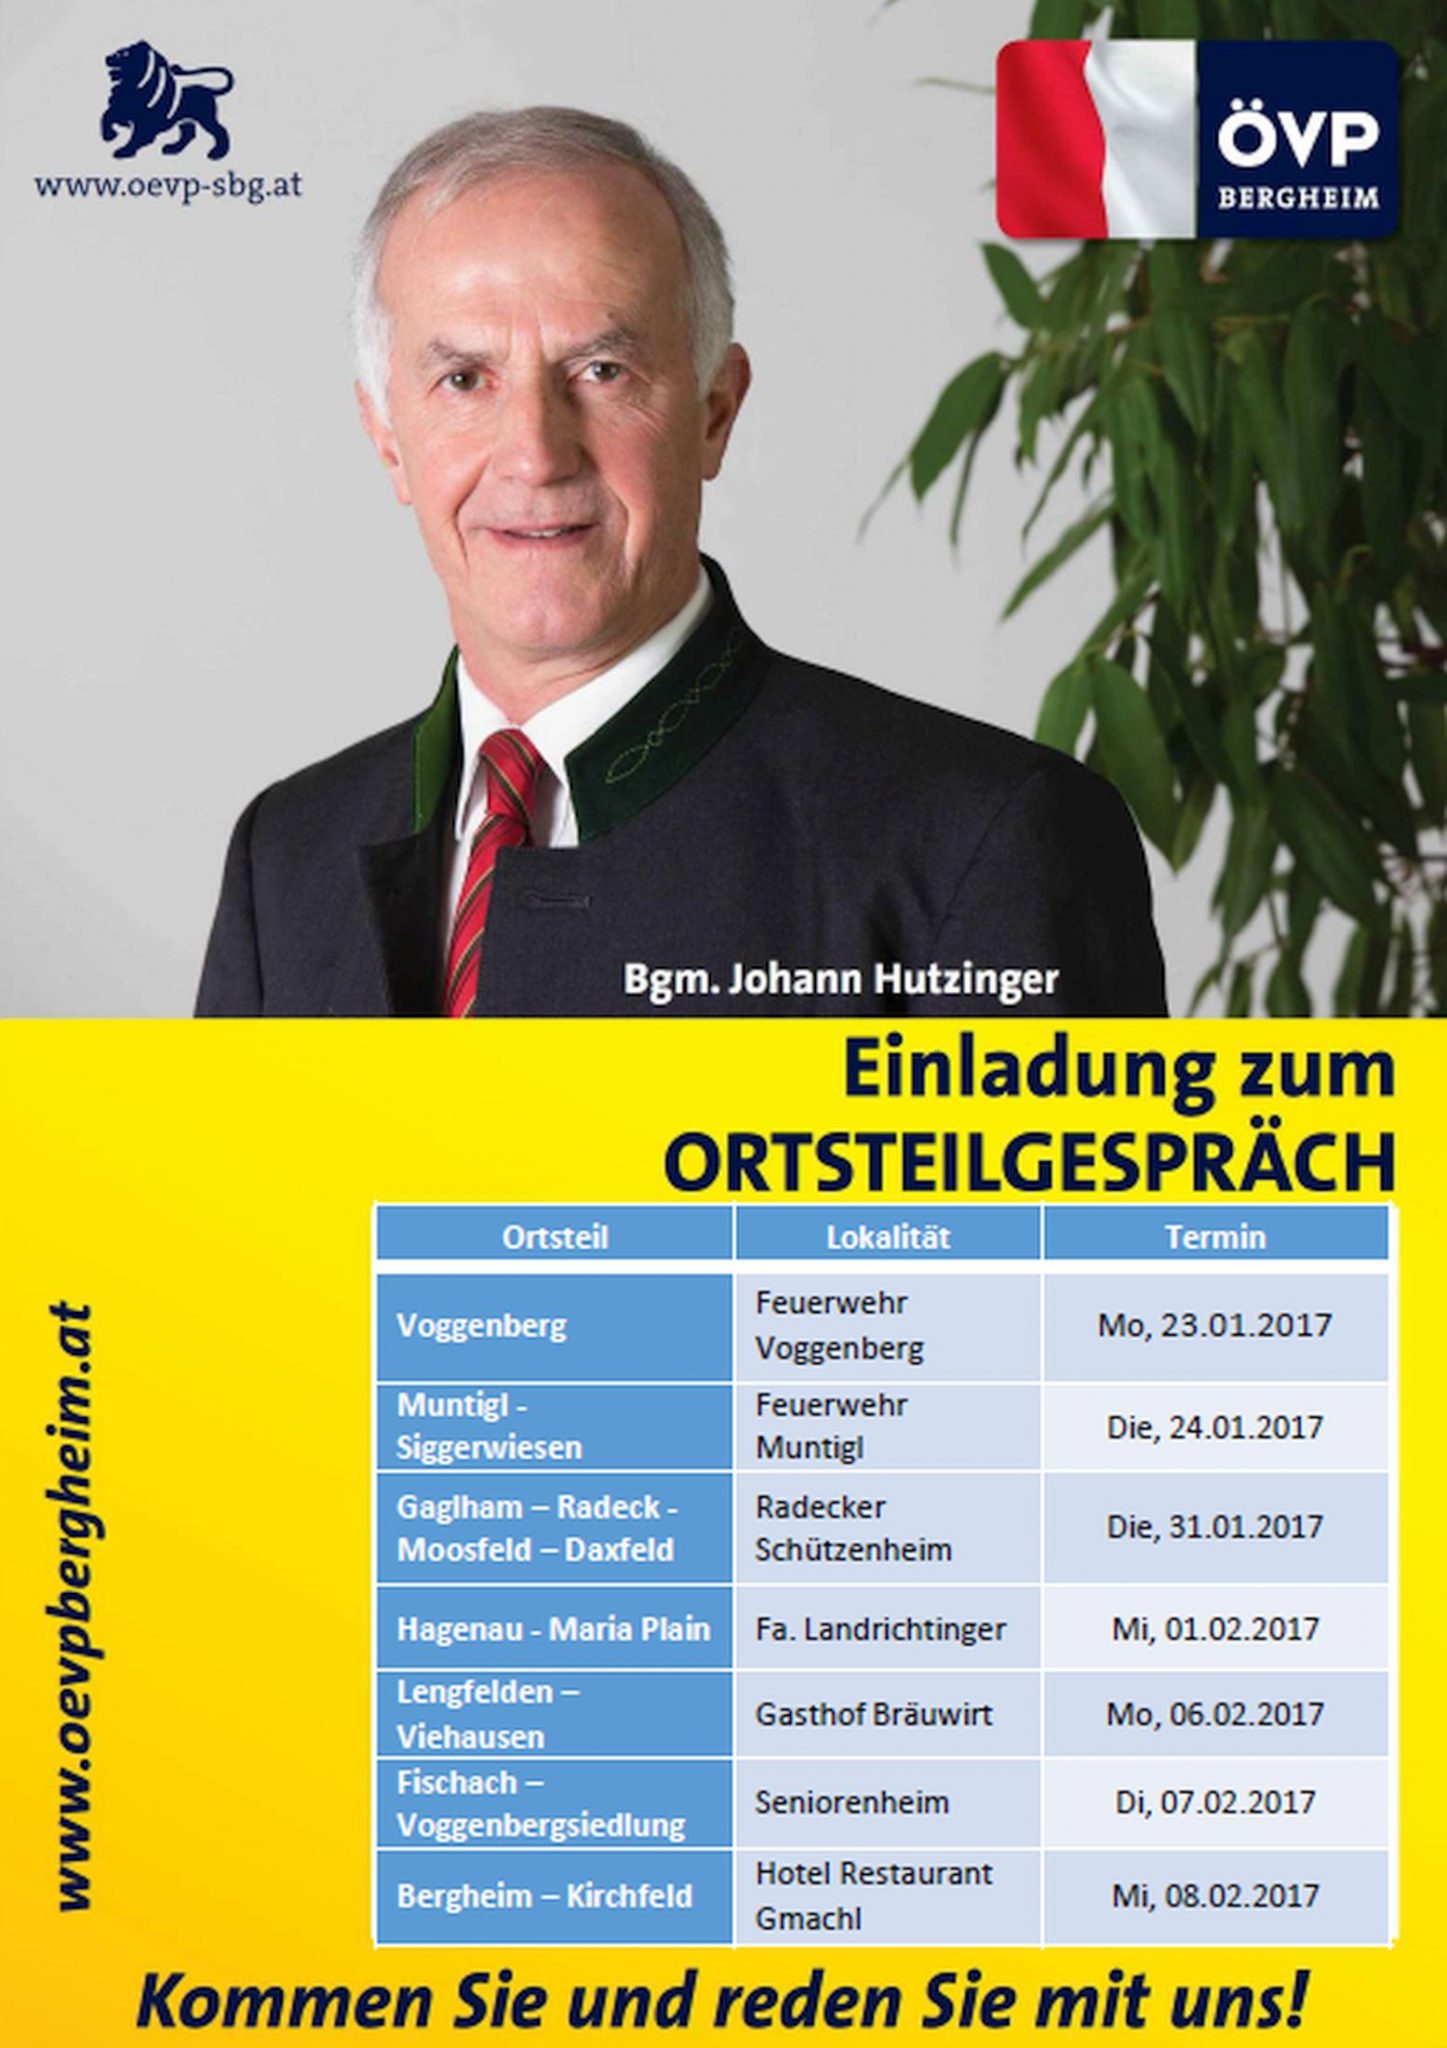 You are currently viewing Ortsteilgespräche der ÖVP Bergheim